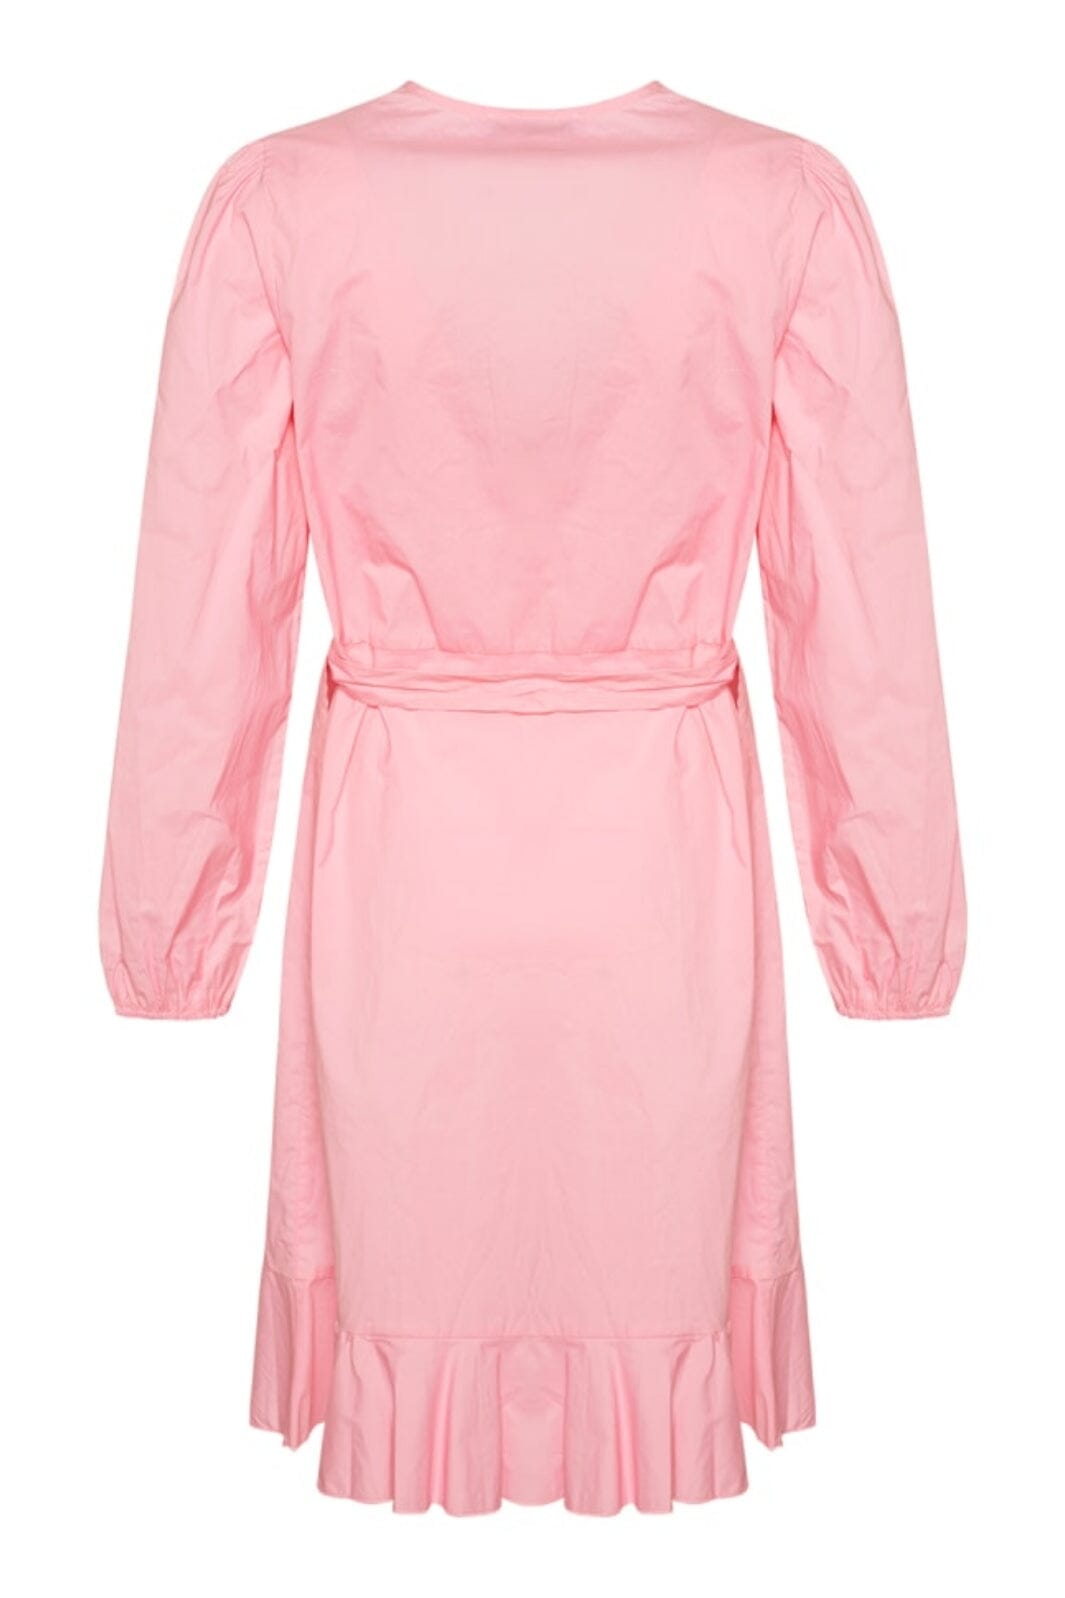 Noella - Magne Dress - Light Pink Kjoler 